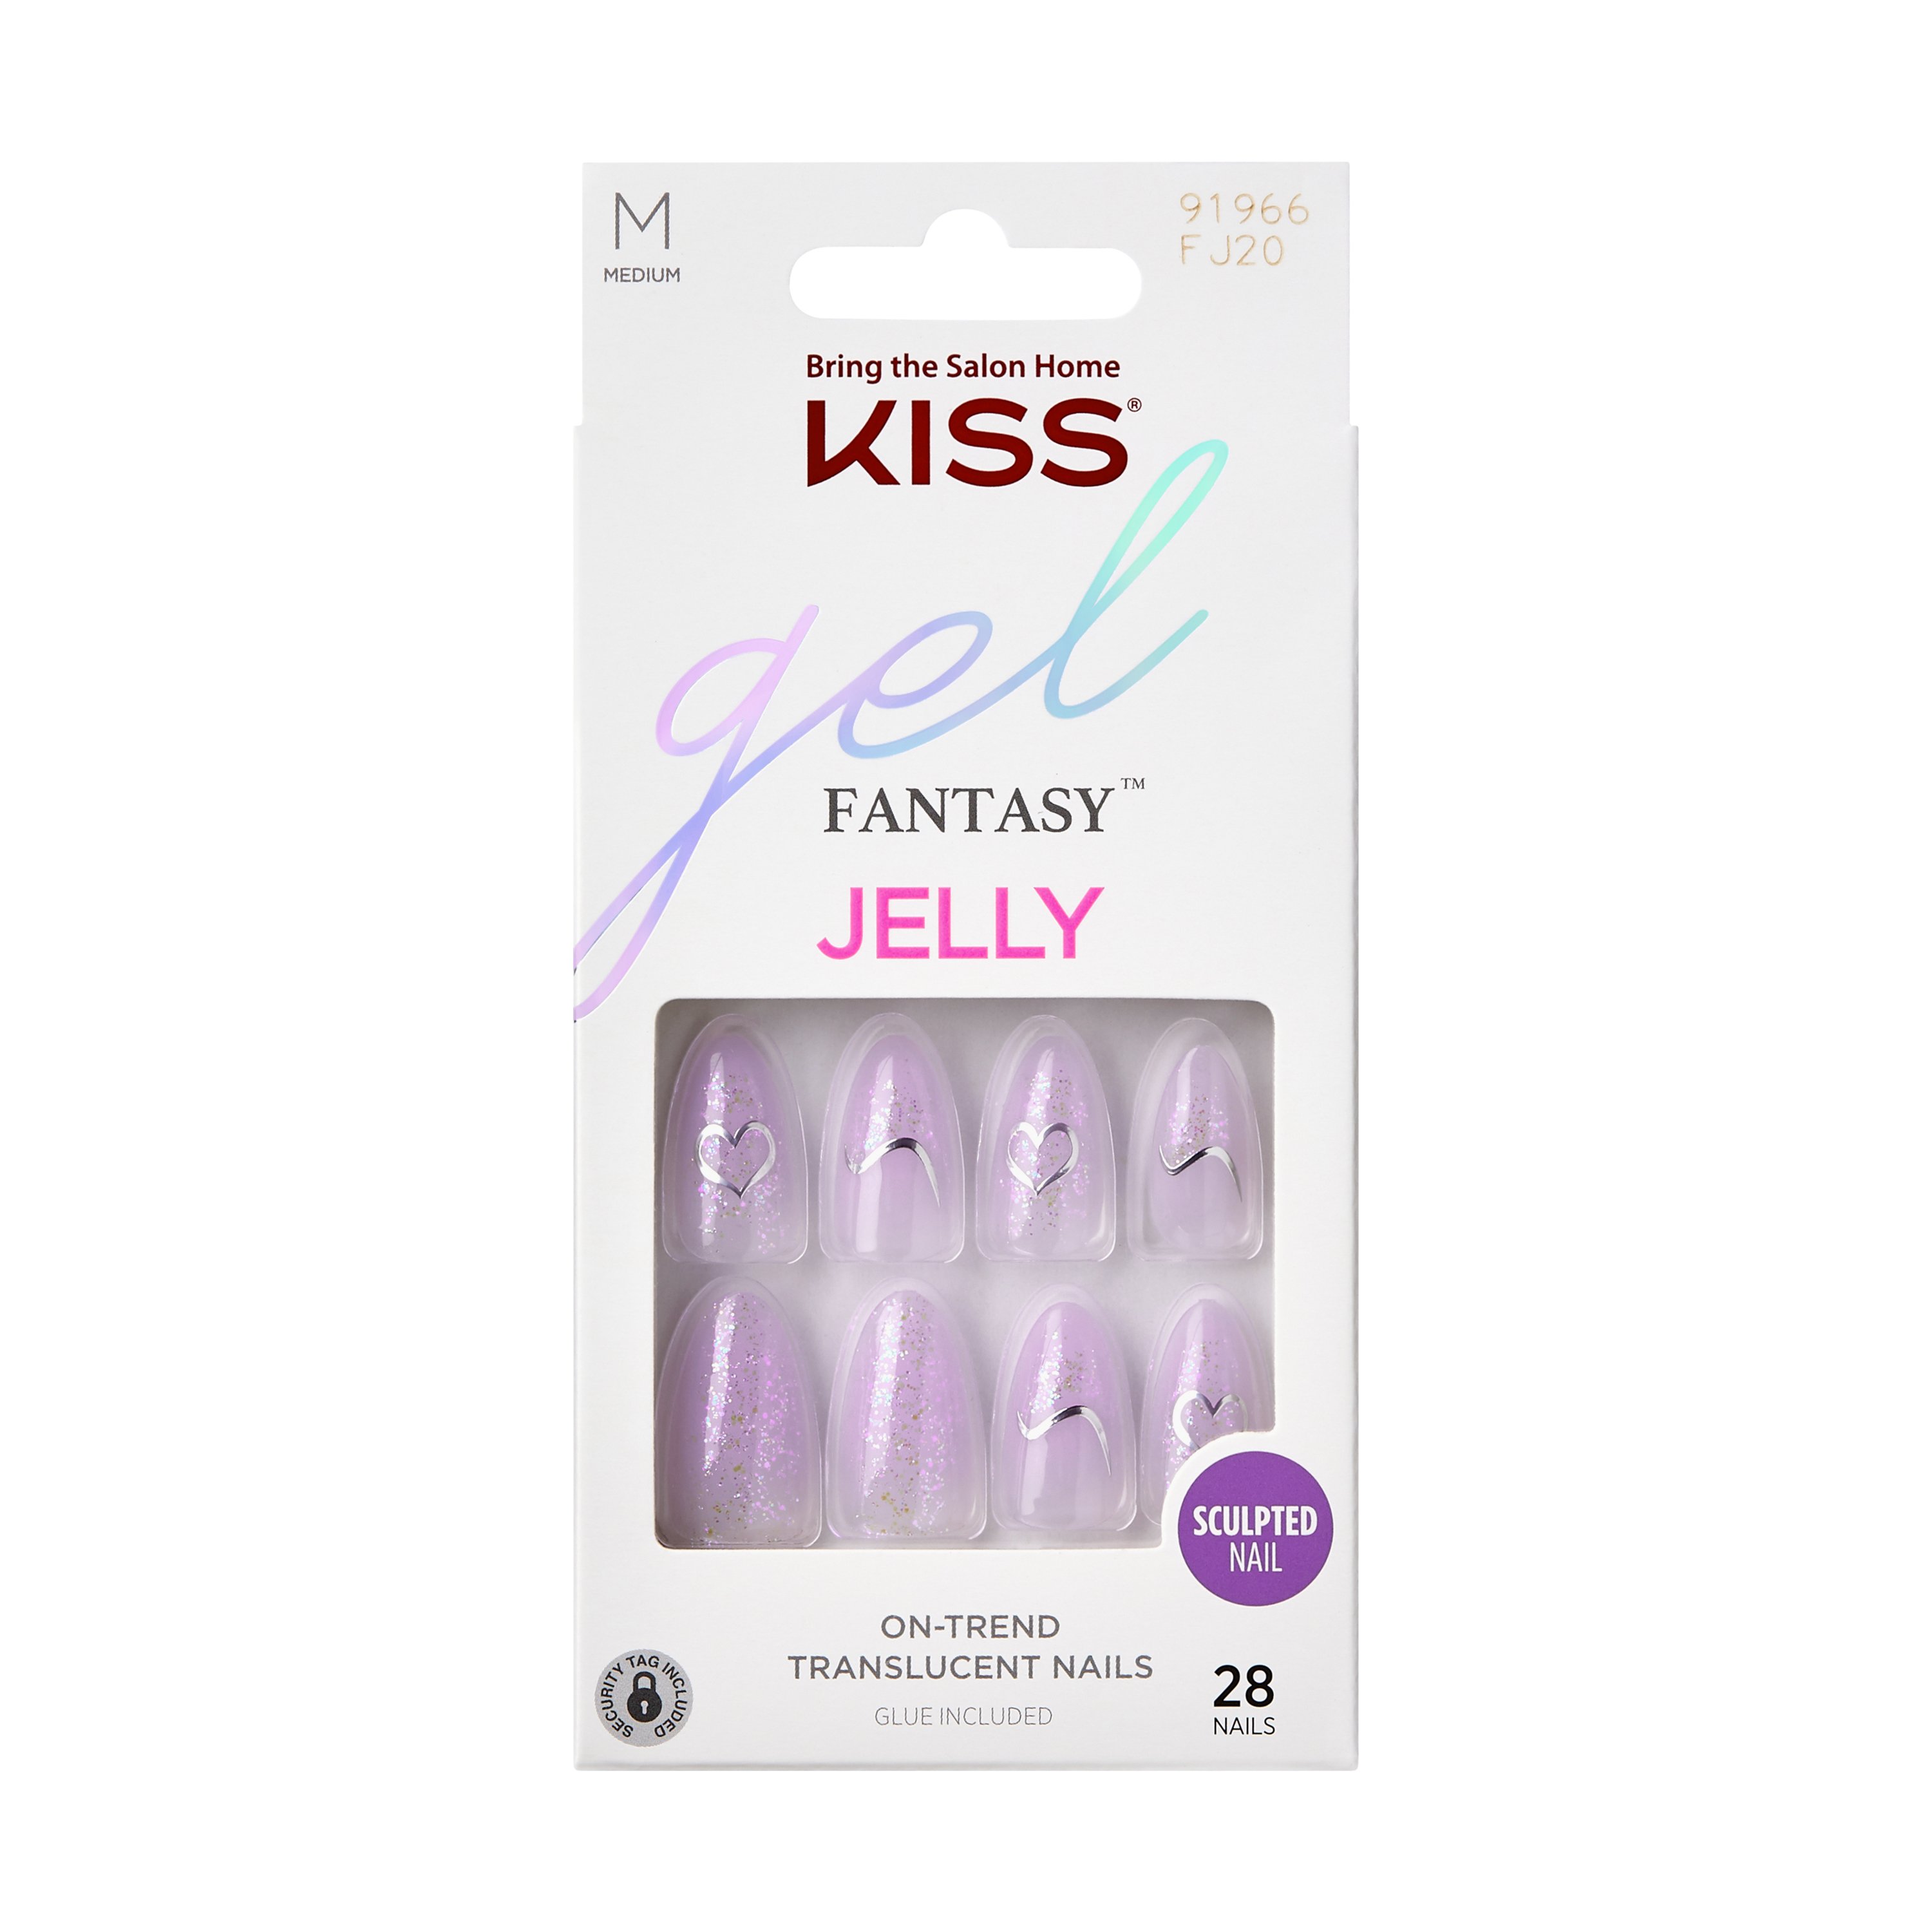 KISS Gel Fantasy Jelly Nails - One Day Jelly - Shop Nail Sets at H-E-B